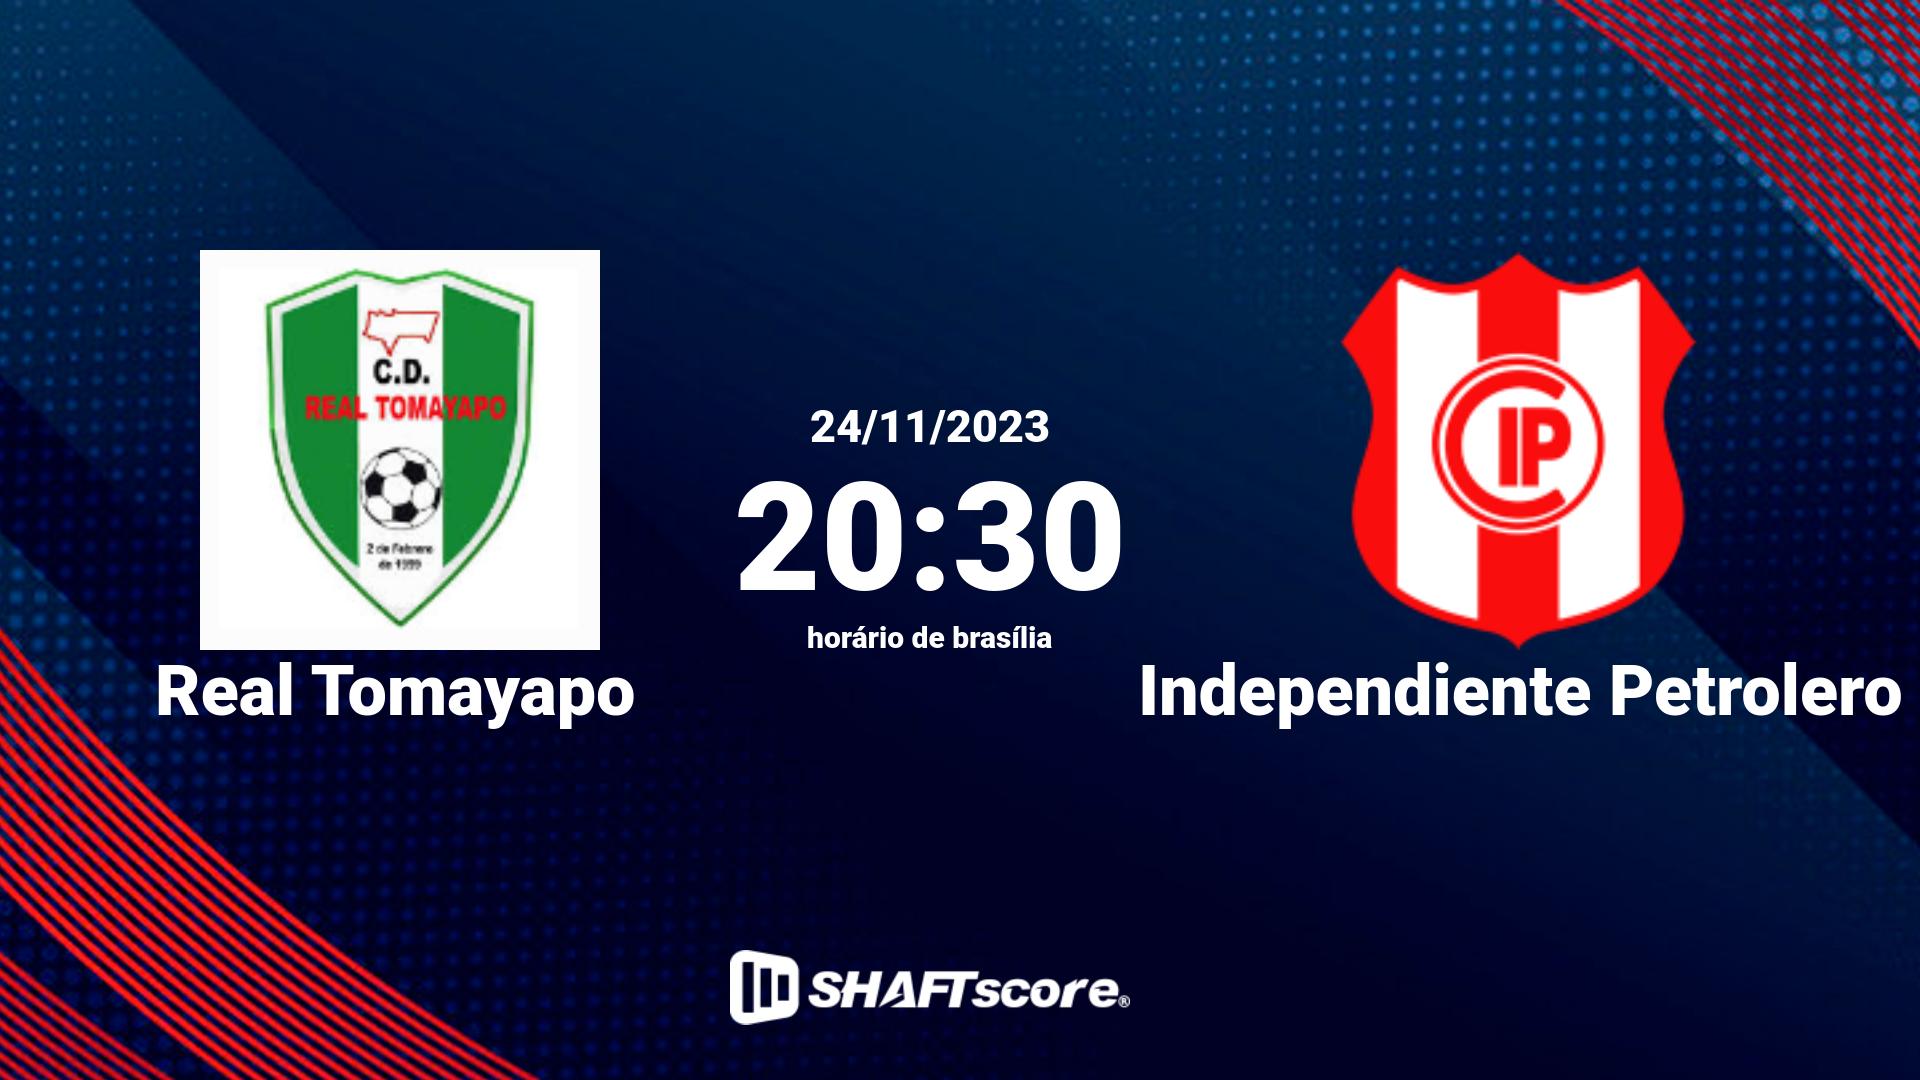 Estatísticas do jogo Real Tomayapo vs Independiente Petrolero 24.11 20:30